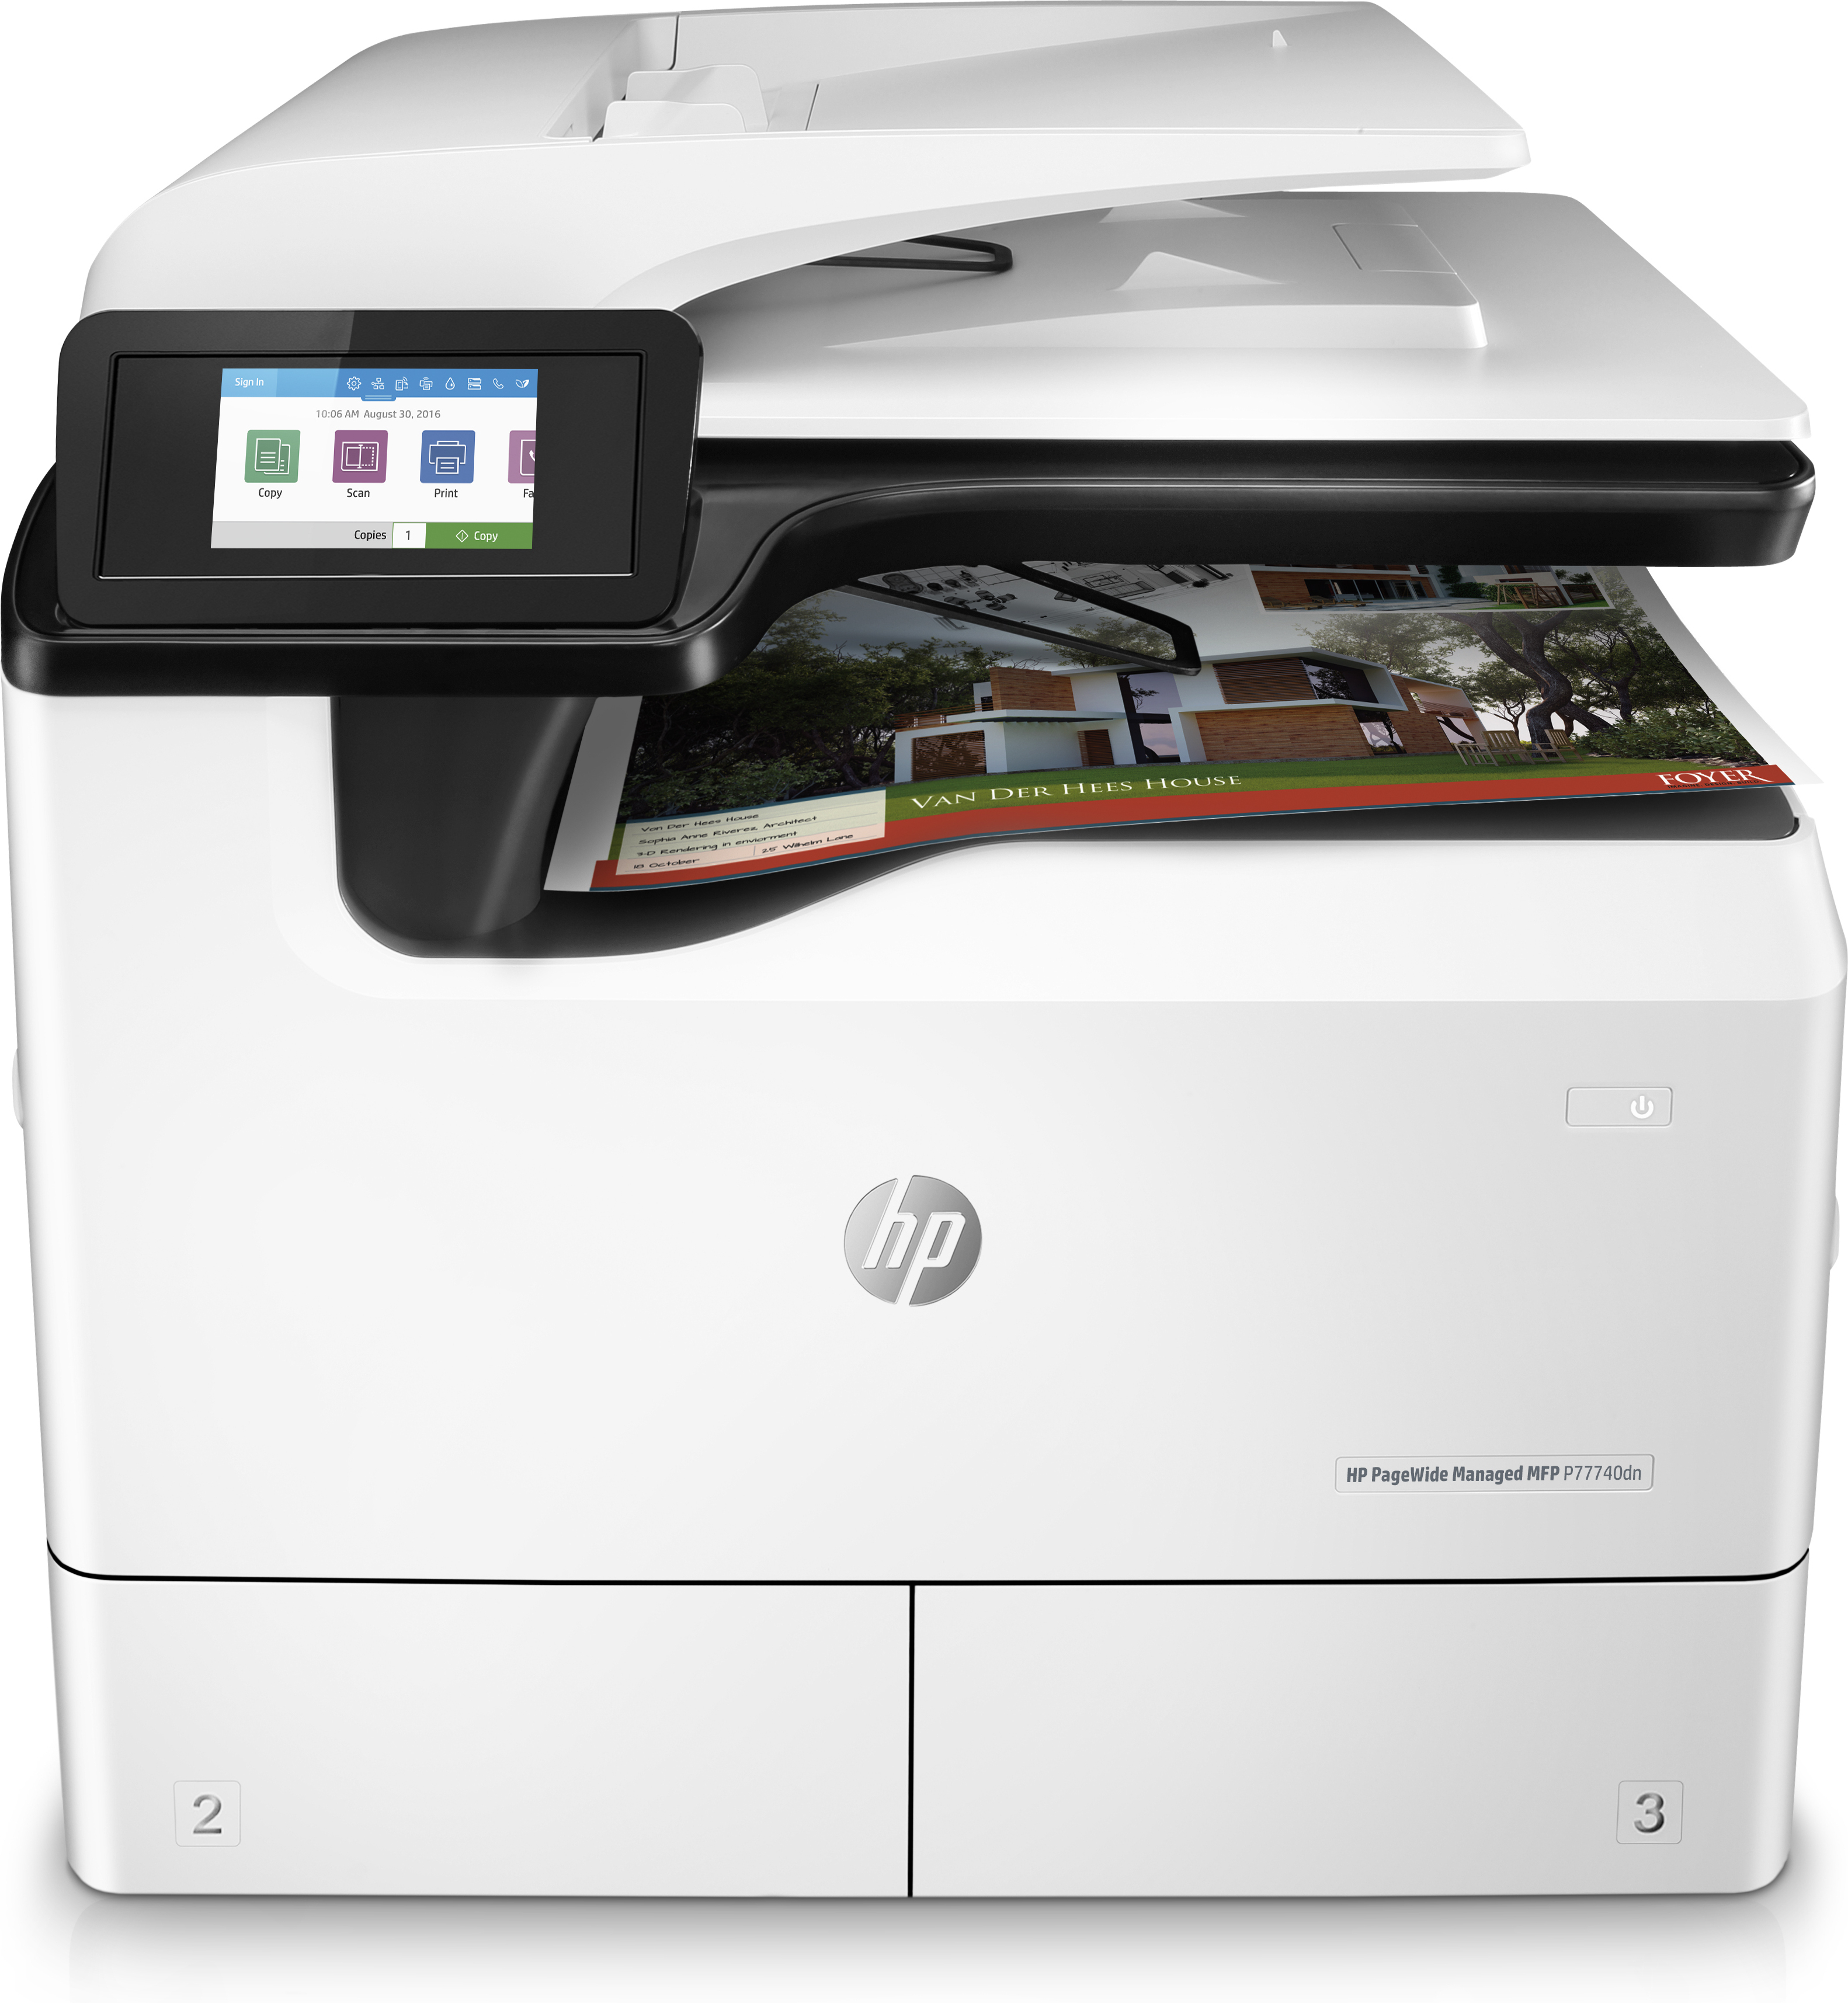 Náplně do tiskárny HP PageWide Managed P77740dn